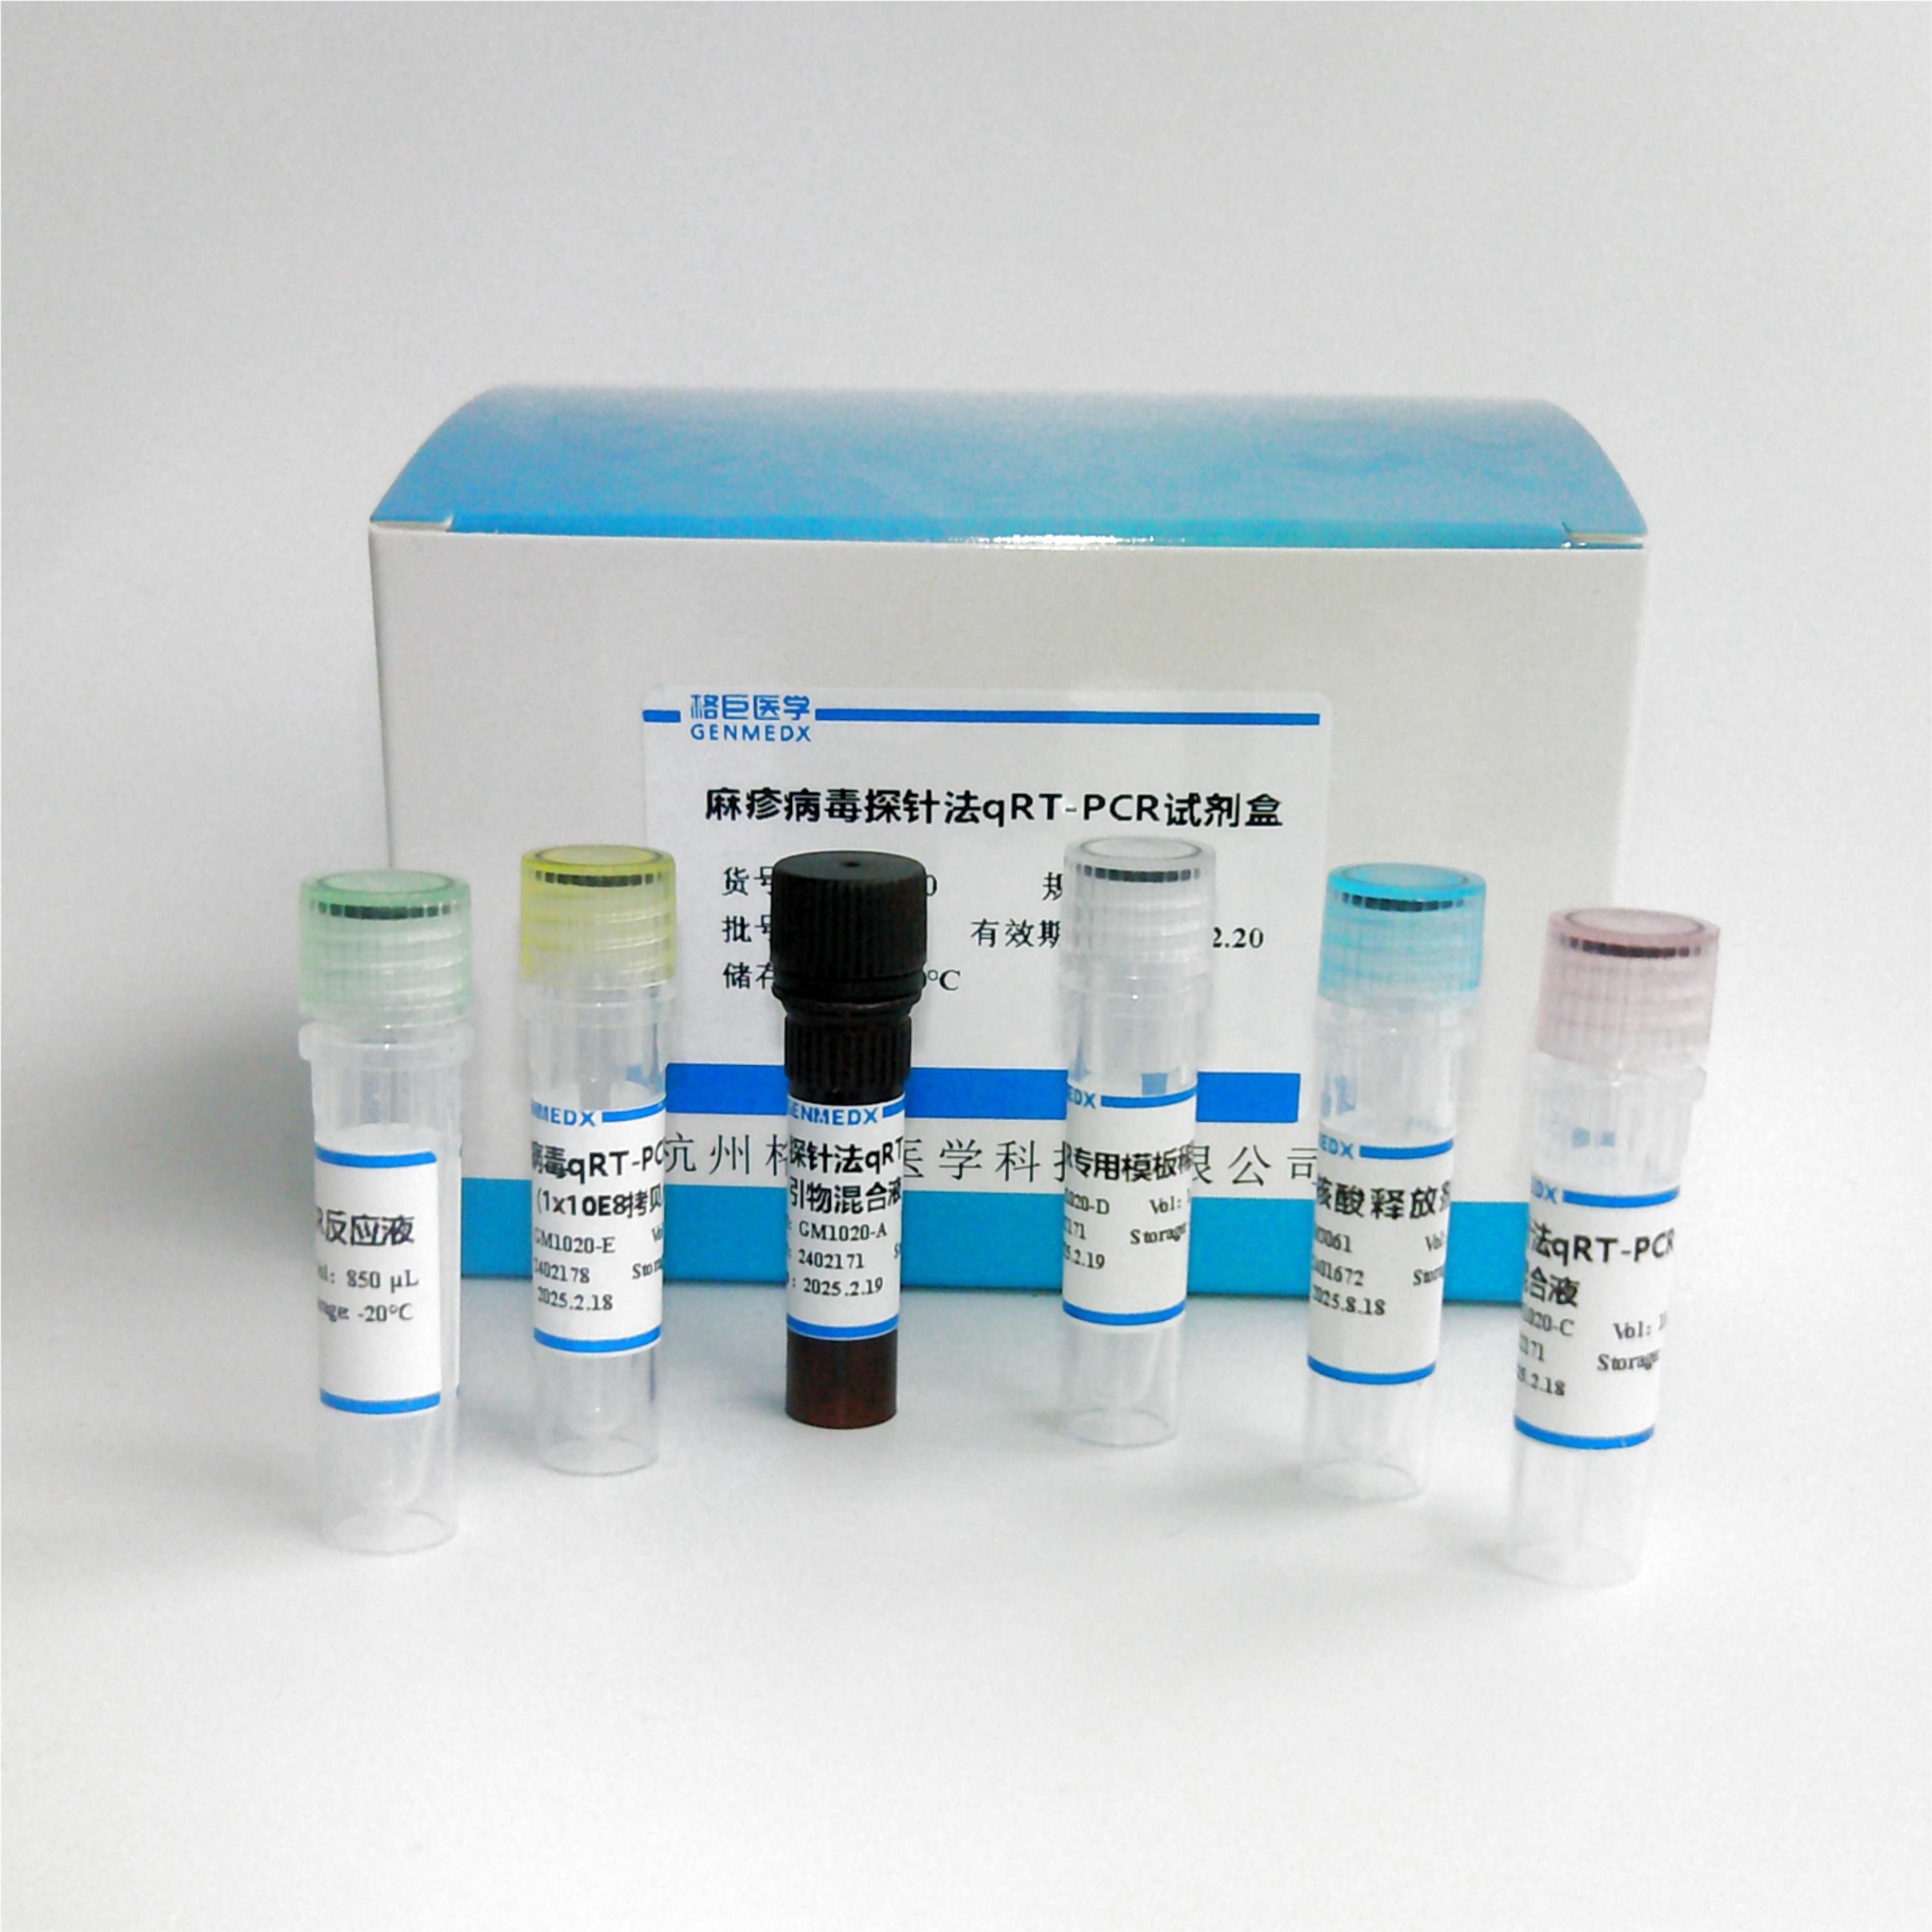 人类嗜T细胞病毒Ⅱ型探针法荧光定量RT-PCR试剂盒